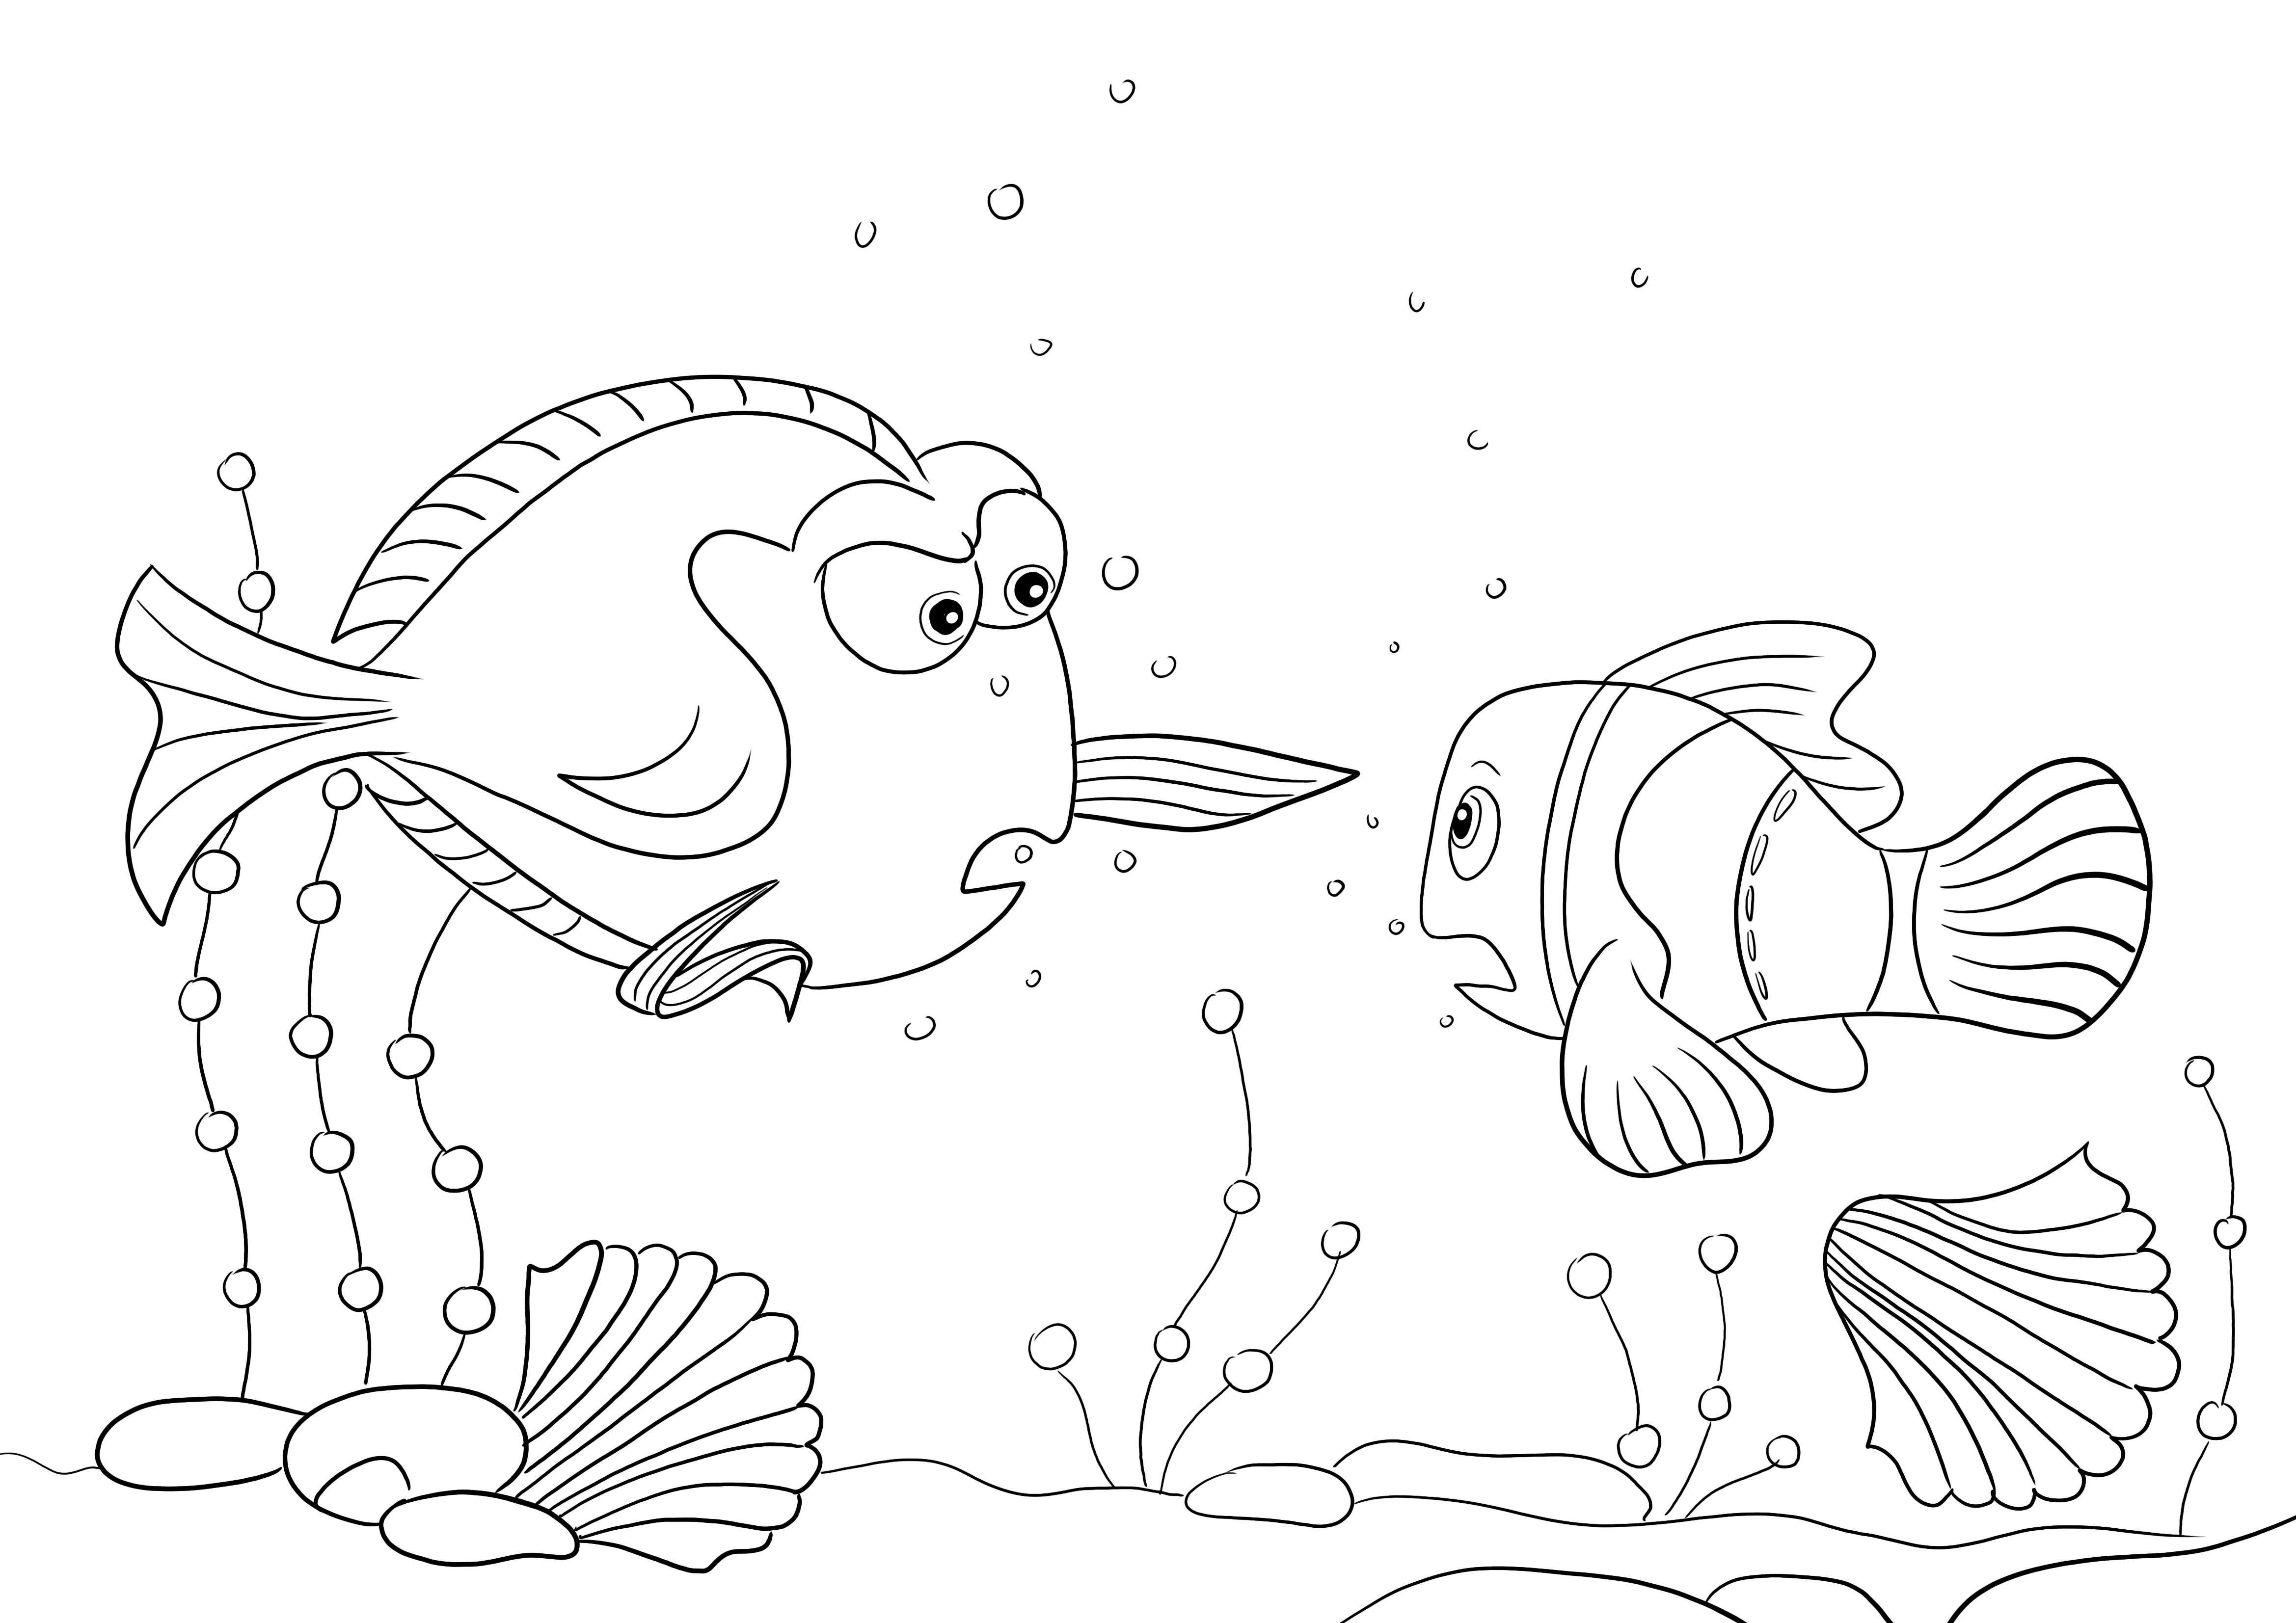 Charlie ja Nemo ilmainen värityskuva lapsille ladattavaksi ja väritettäväksi hauskasti